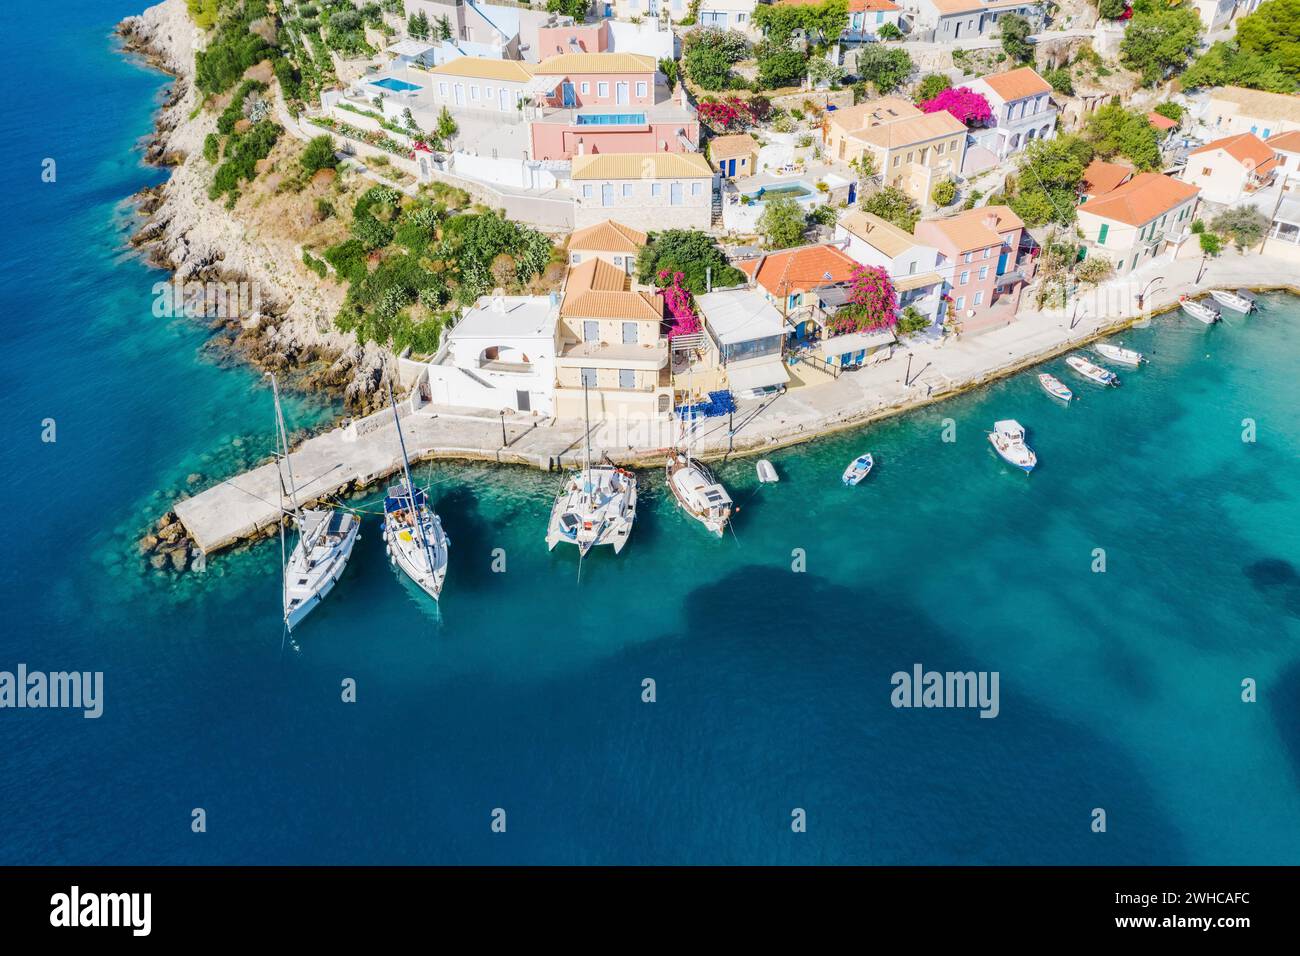 Assos pittoresque village de pêcheurs d'en haut, Kefalonia, Grèce.Vue aérienne de drone.Bateaux à voile amarrés dans la baie turquoise. Banque D'Images